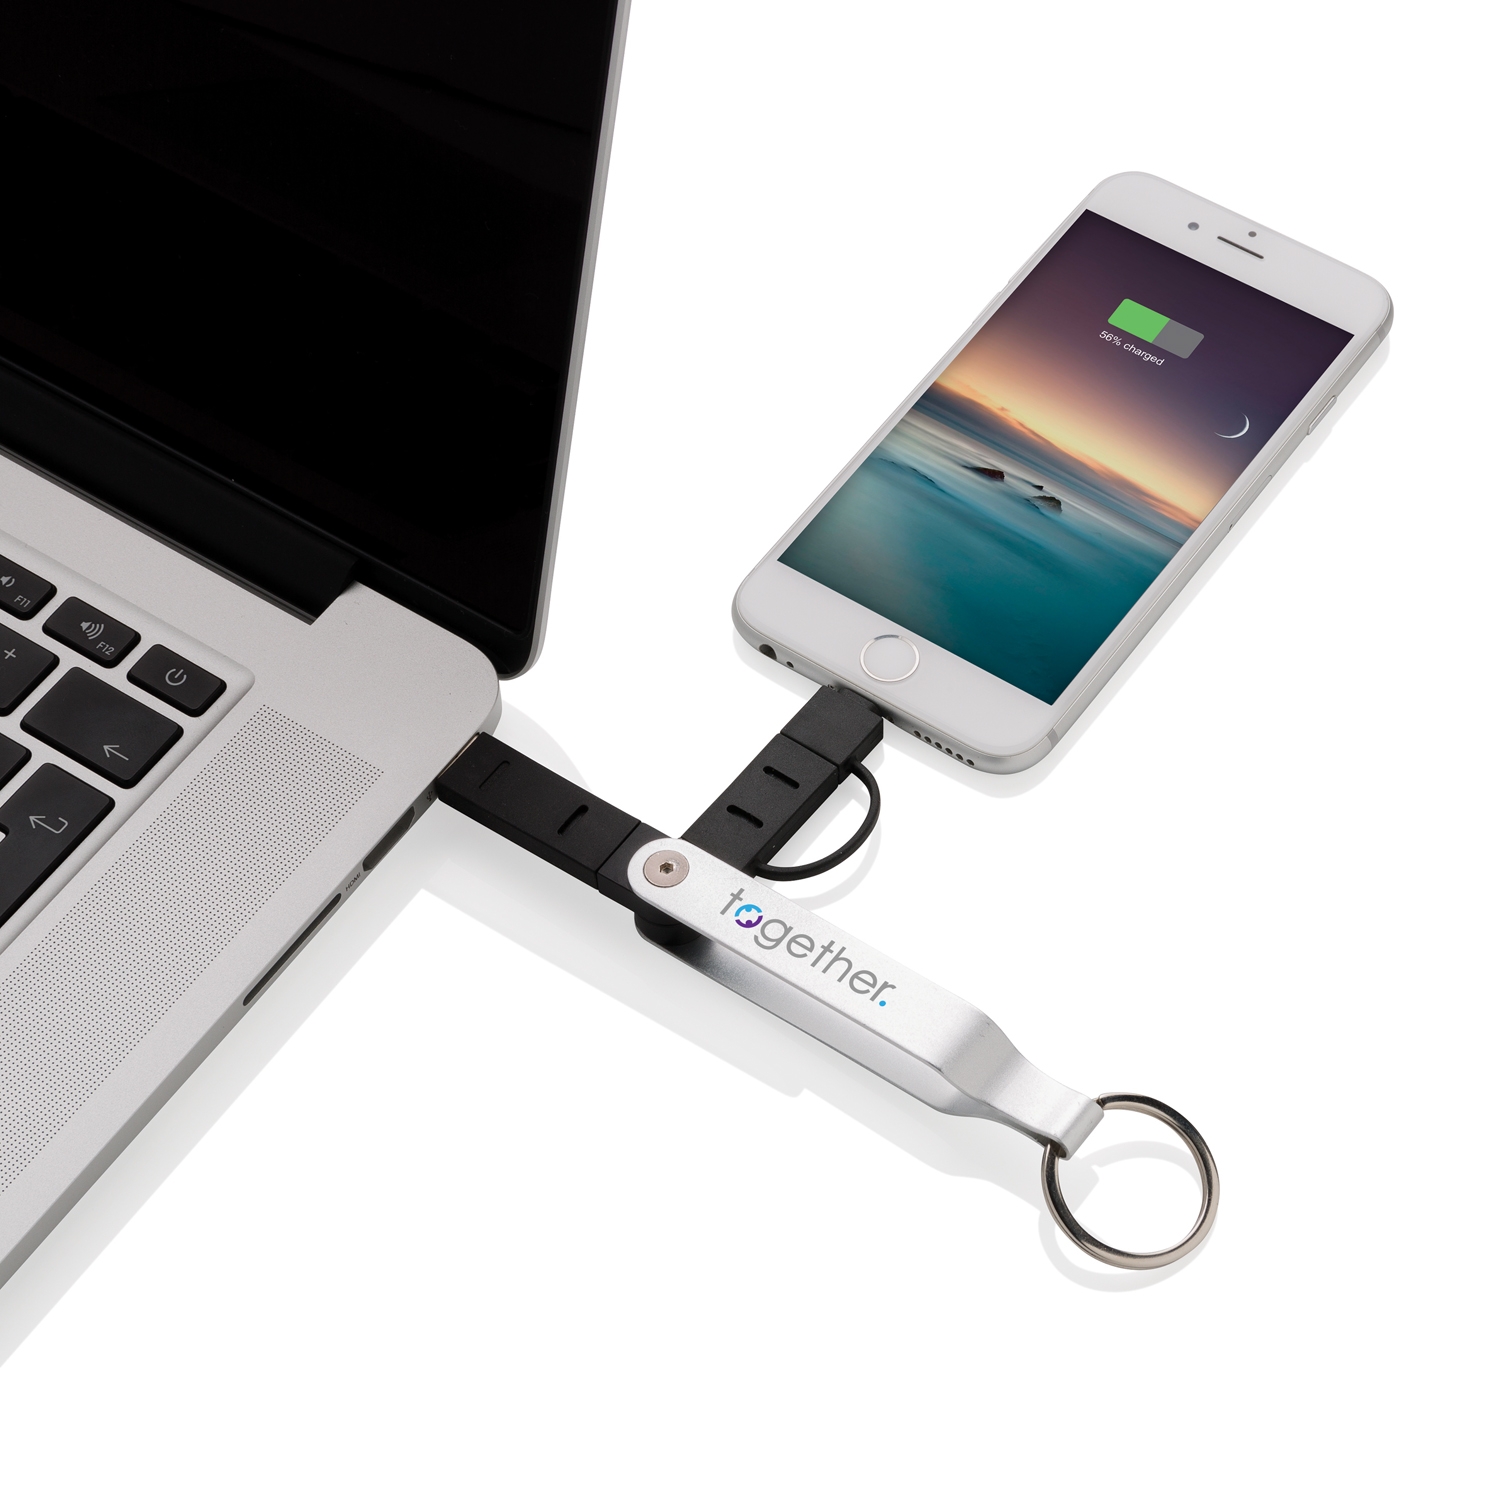 USB-кабель MFi 2 в 1, серебряный; черный, алюминий; tpr